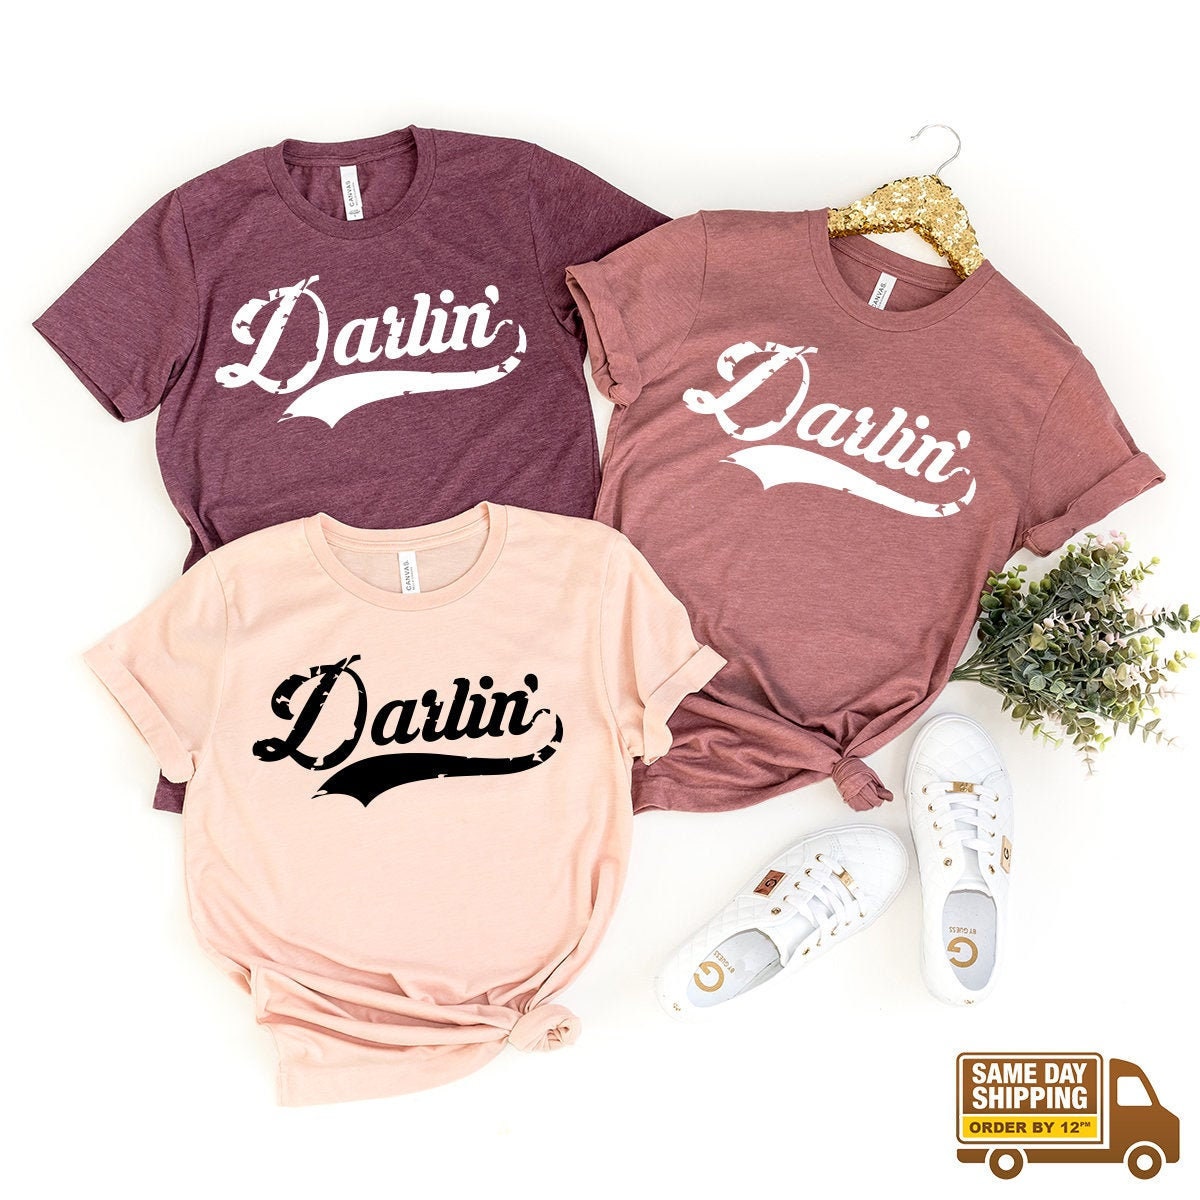 Darlin Shirt, Darlin' T-Shirt, Southern Shirt, Southern Tee, Western Shirt, Darlin' Graphic Tee, Country Music Shirt, Concert Shirt - Fastdeliverytees.com